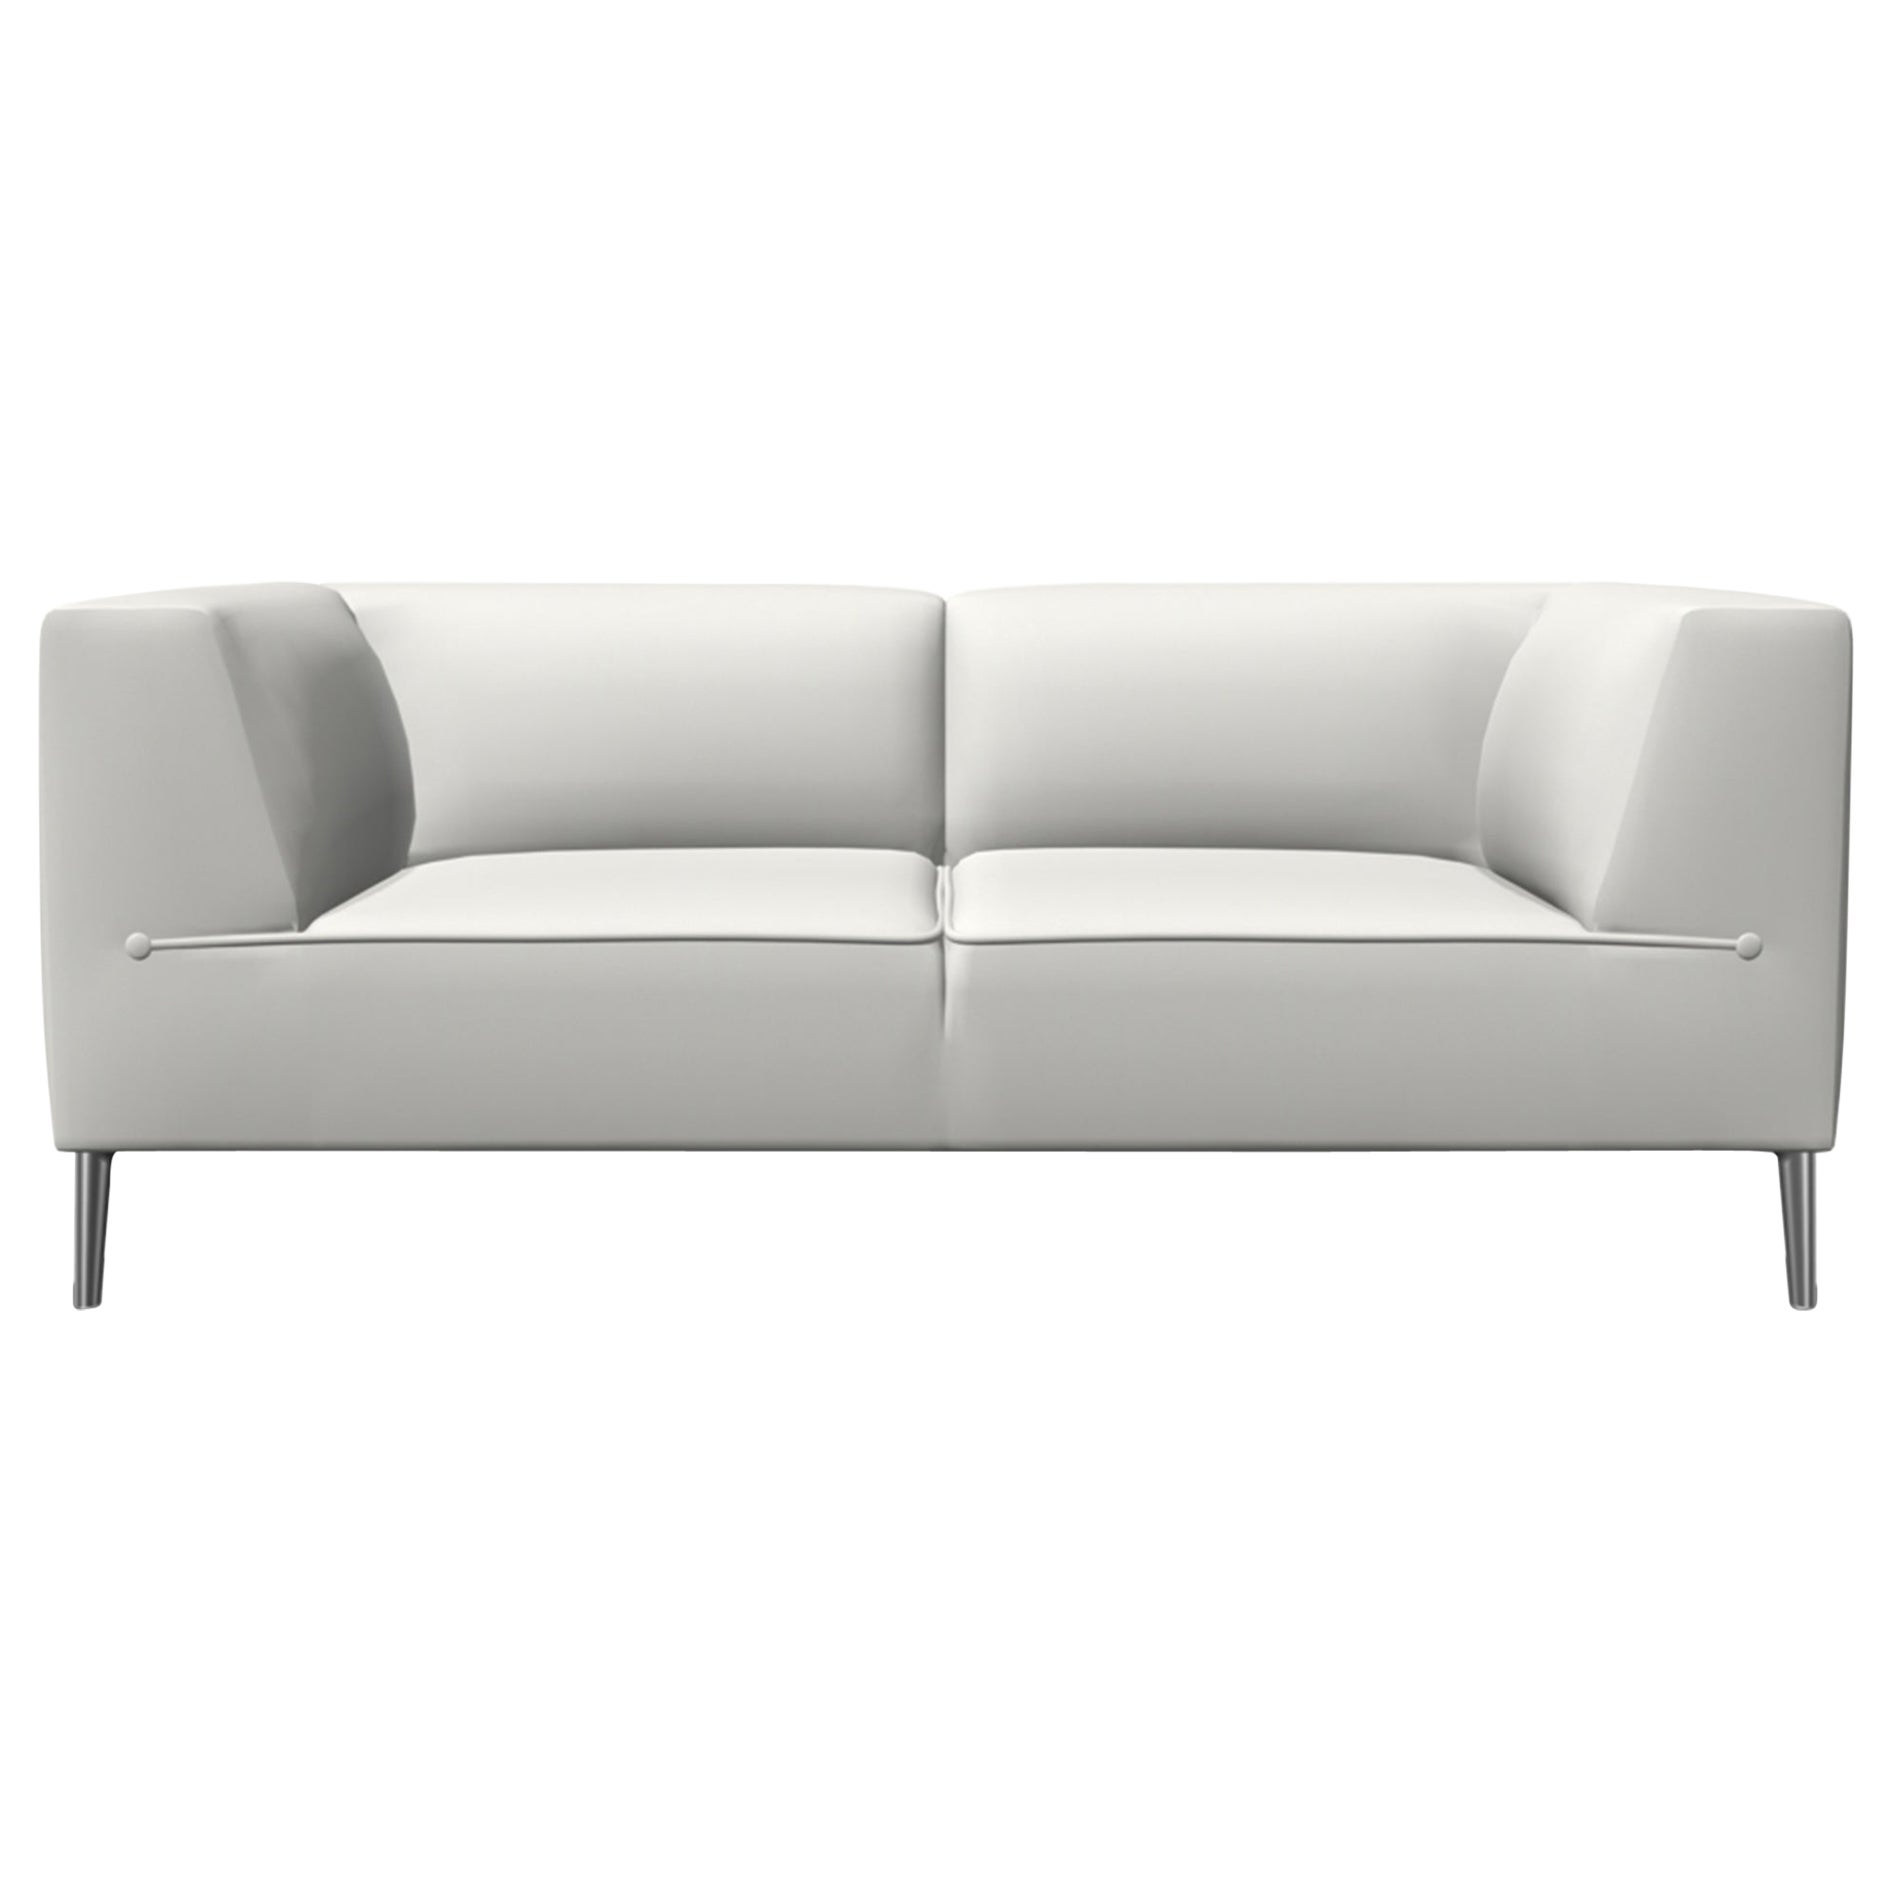 Moooi Zweisitziges Sofa So Good mit weißer Polsterung und polierten Aluminiumfüßen